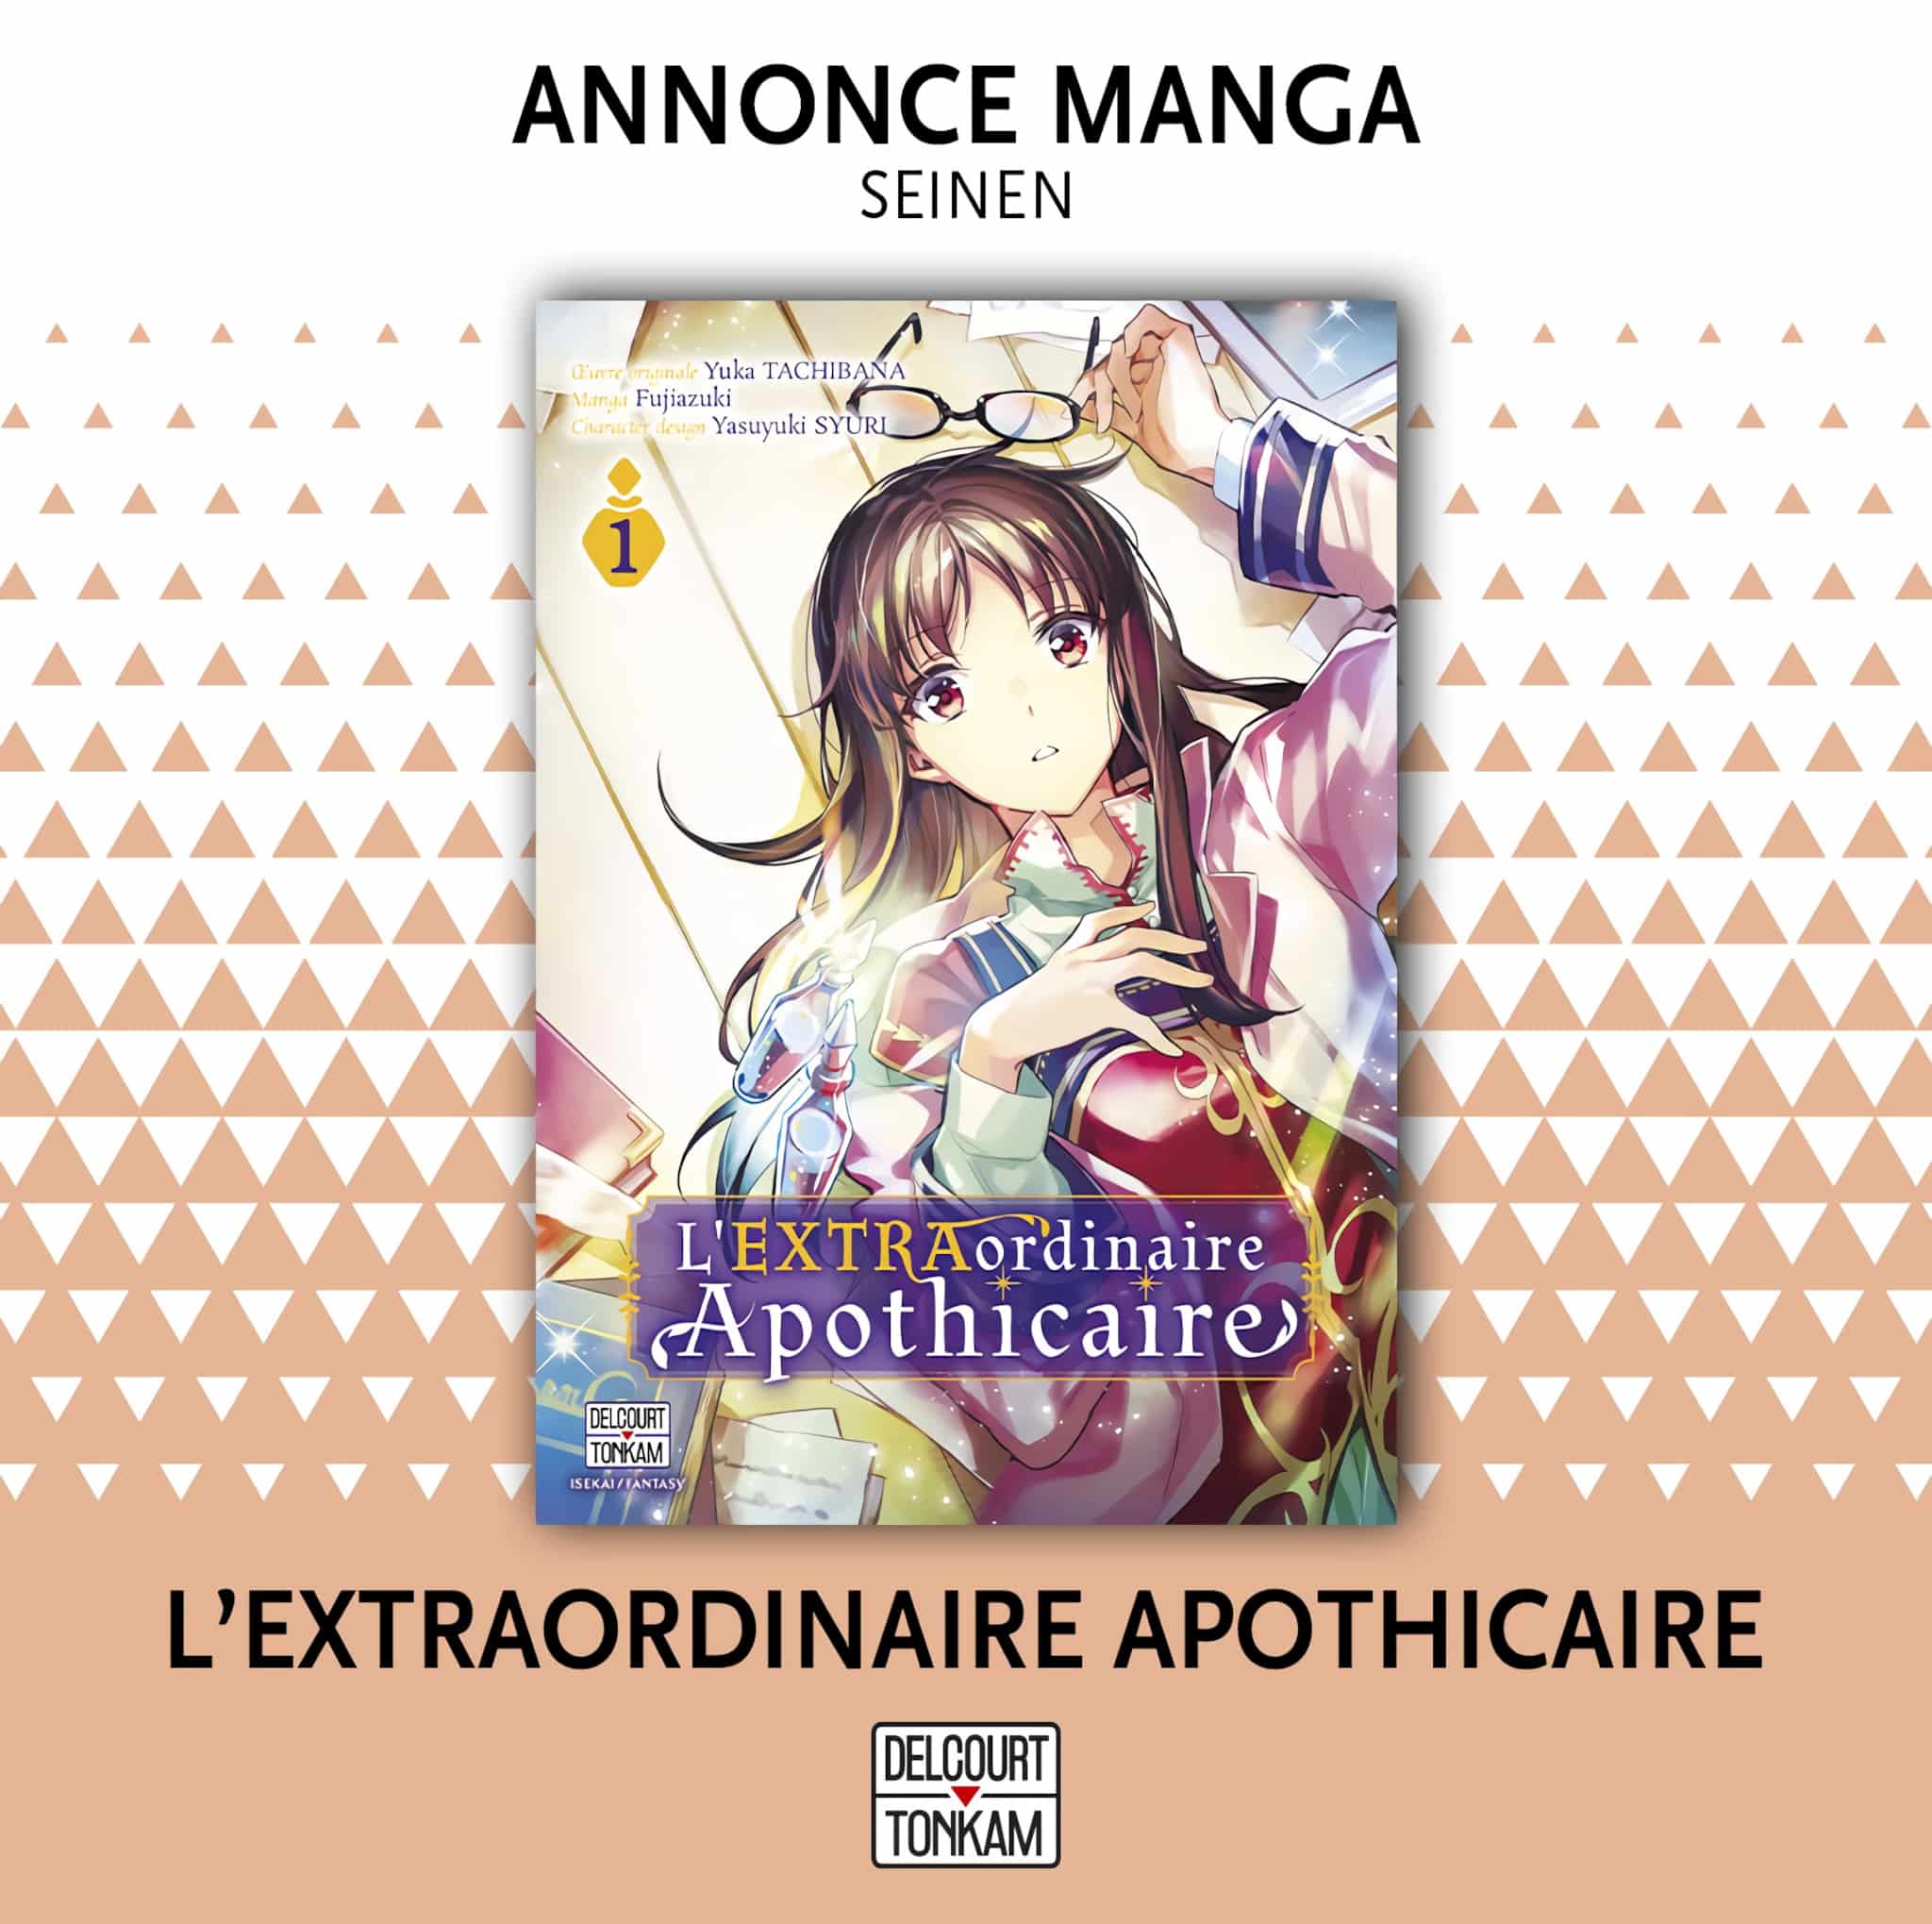 Annonce de la date de sortie du manga LEXTRAordinaire Apothicaire en France